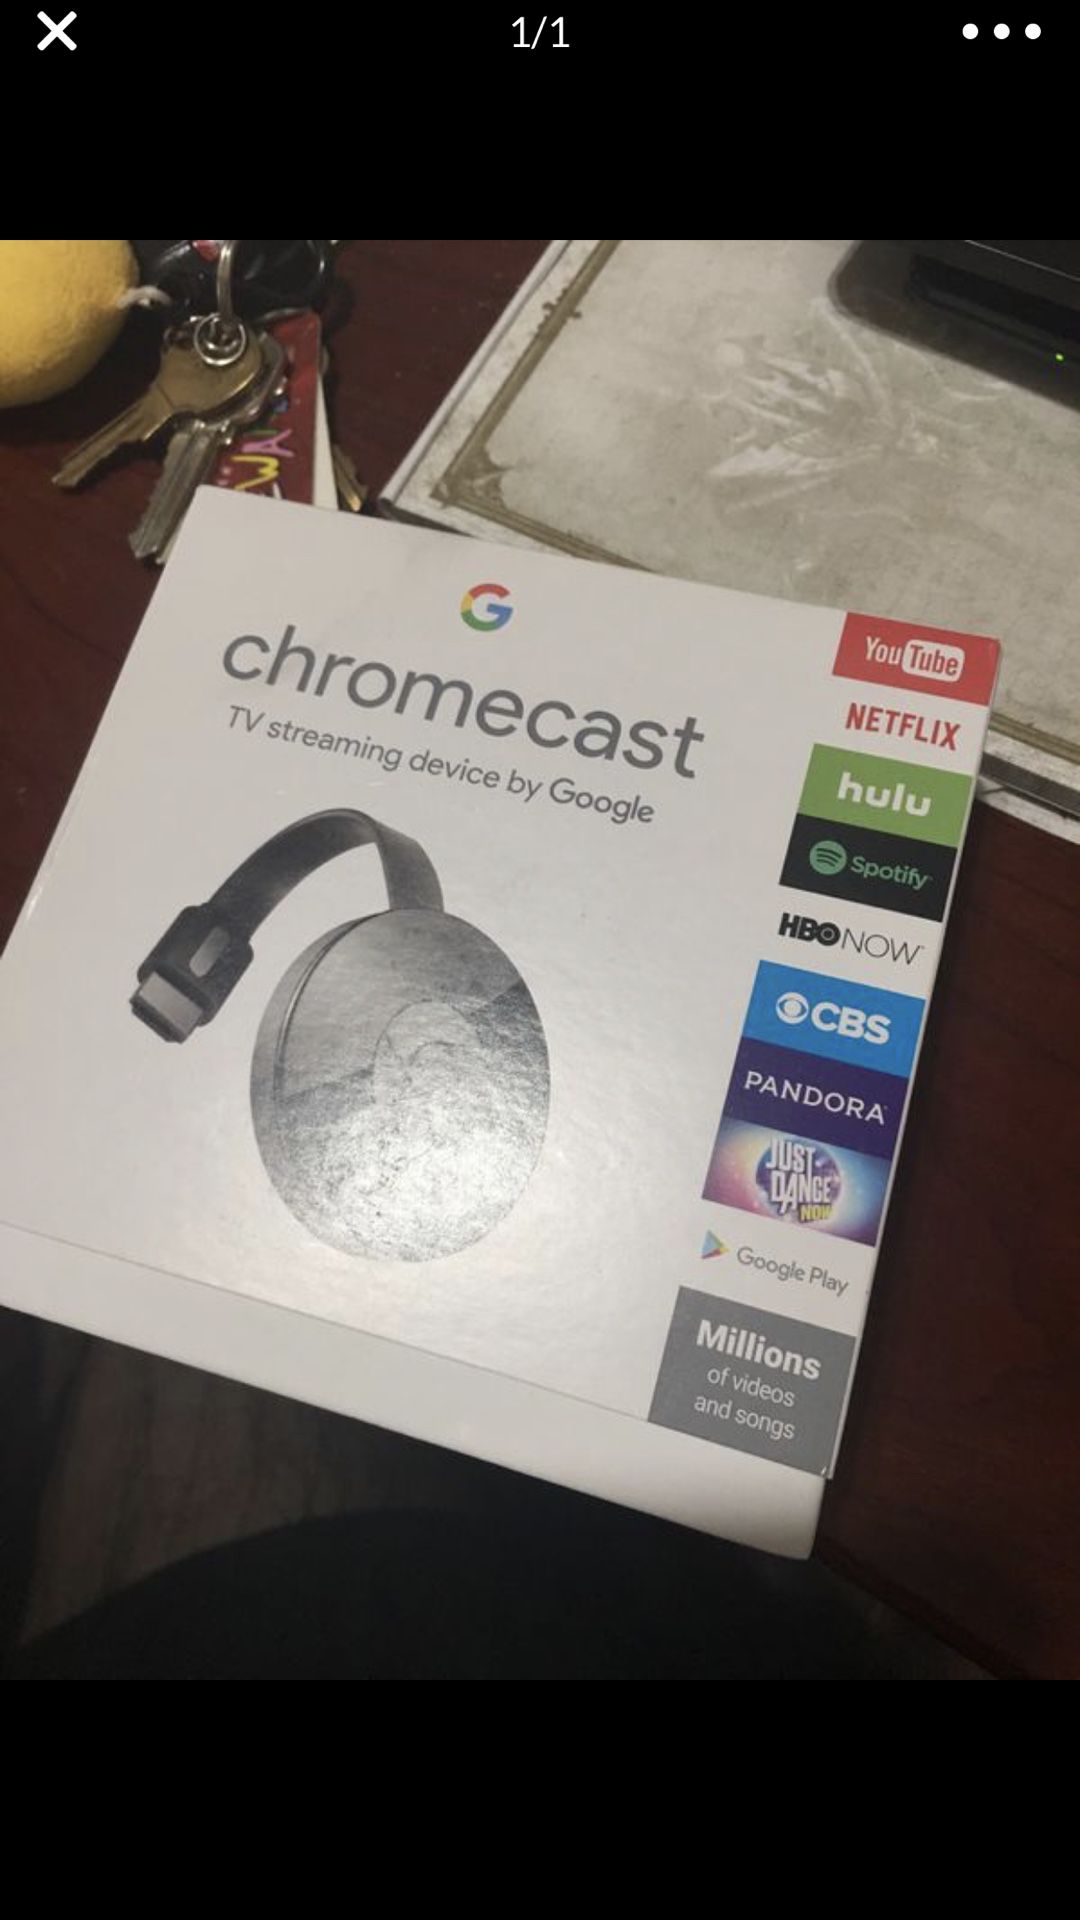 New chromecast